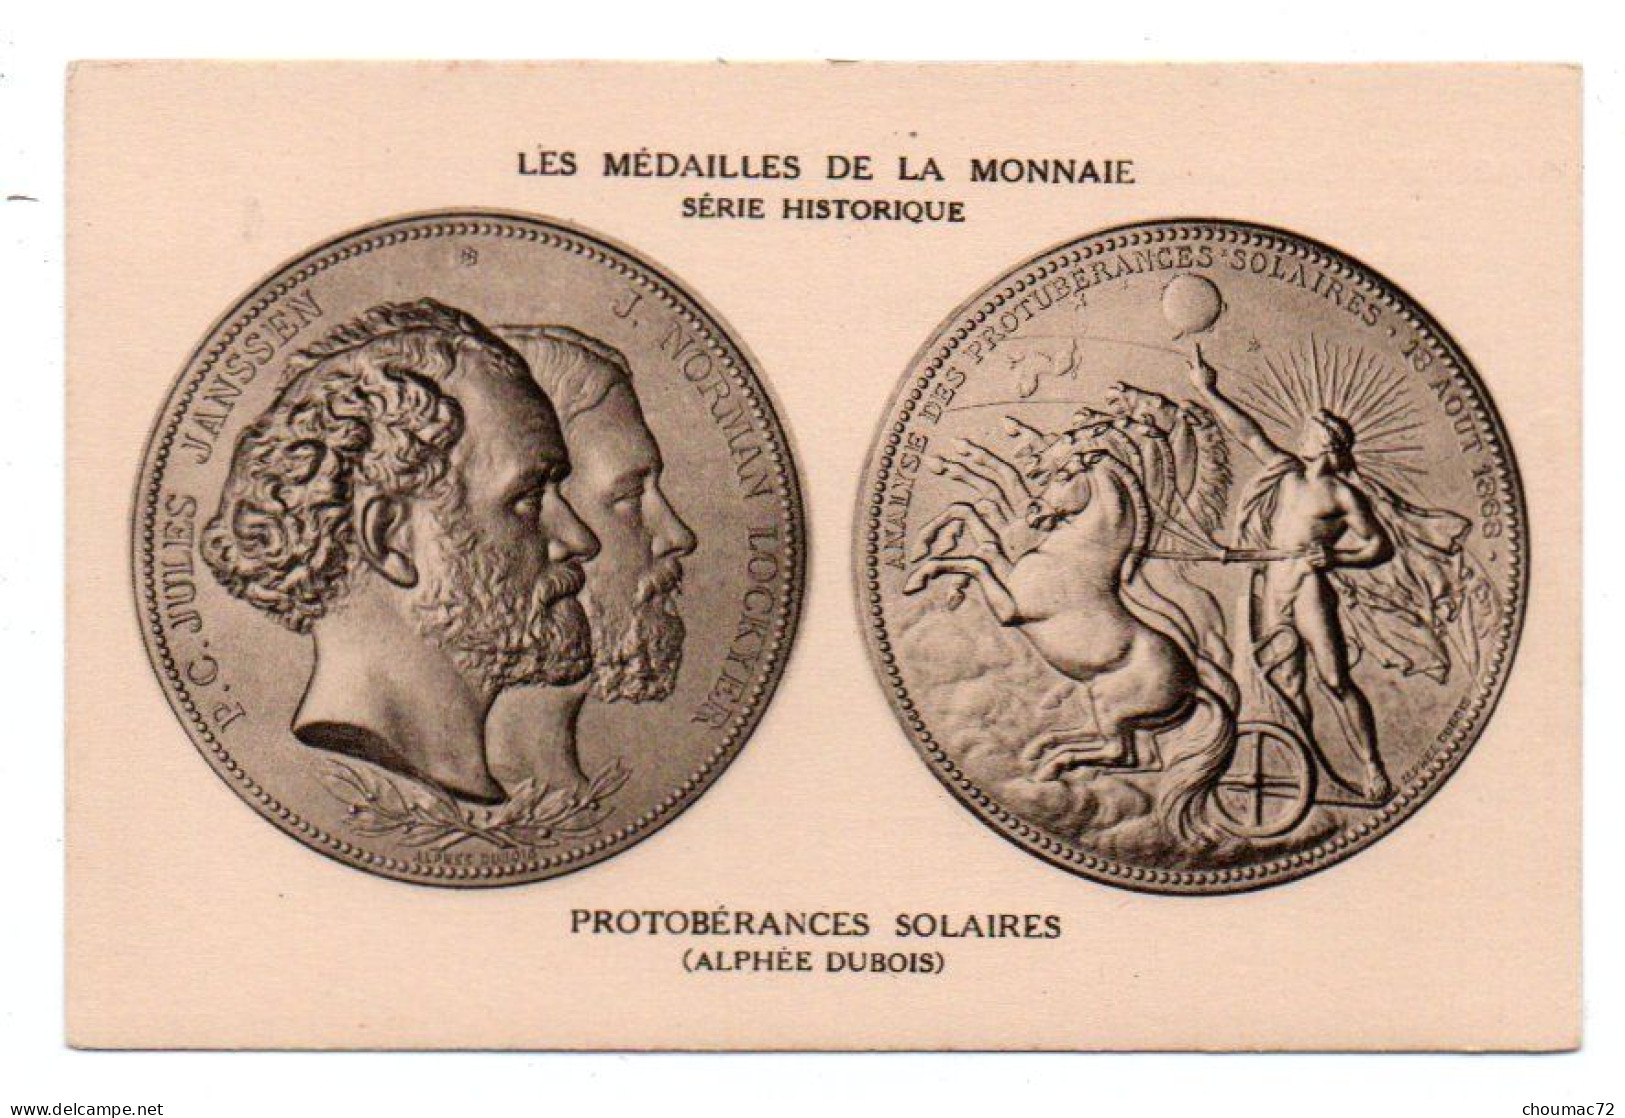 Monnaies 008, Les Medailles De La Monnaie, Serie Historique, Protobérances Solaires, Alphée Dubois - Münzen (Abb.)